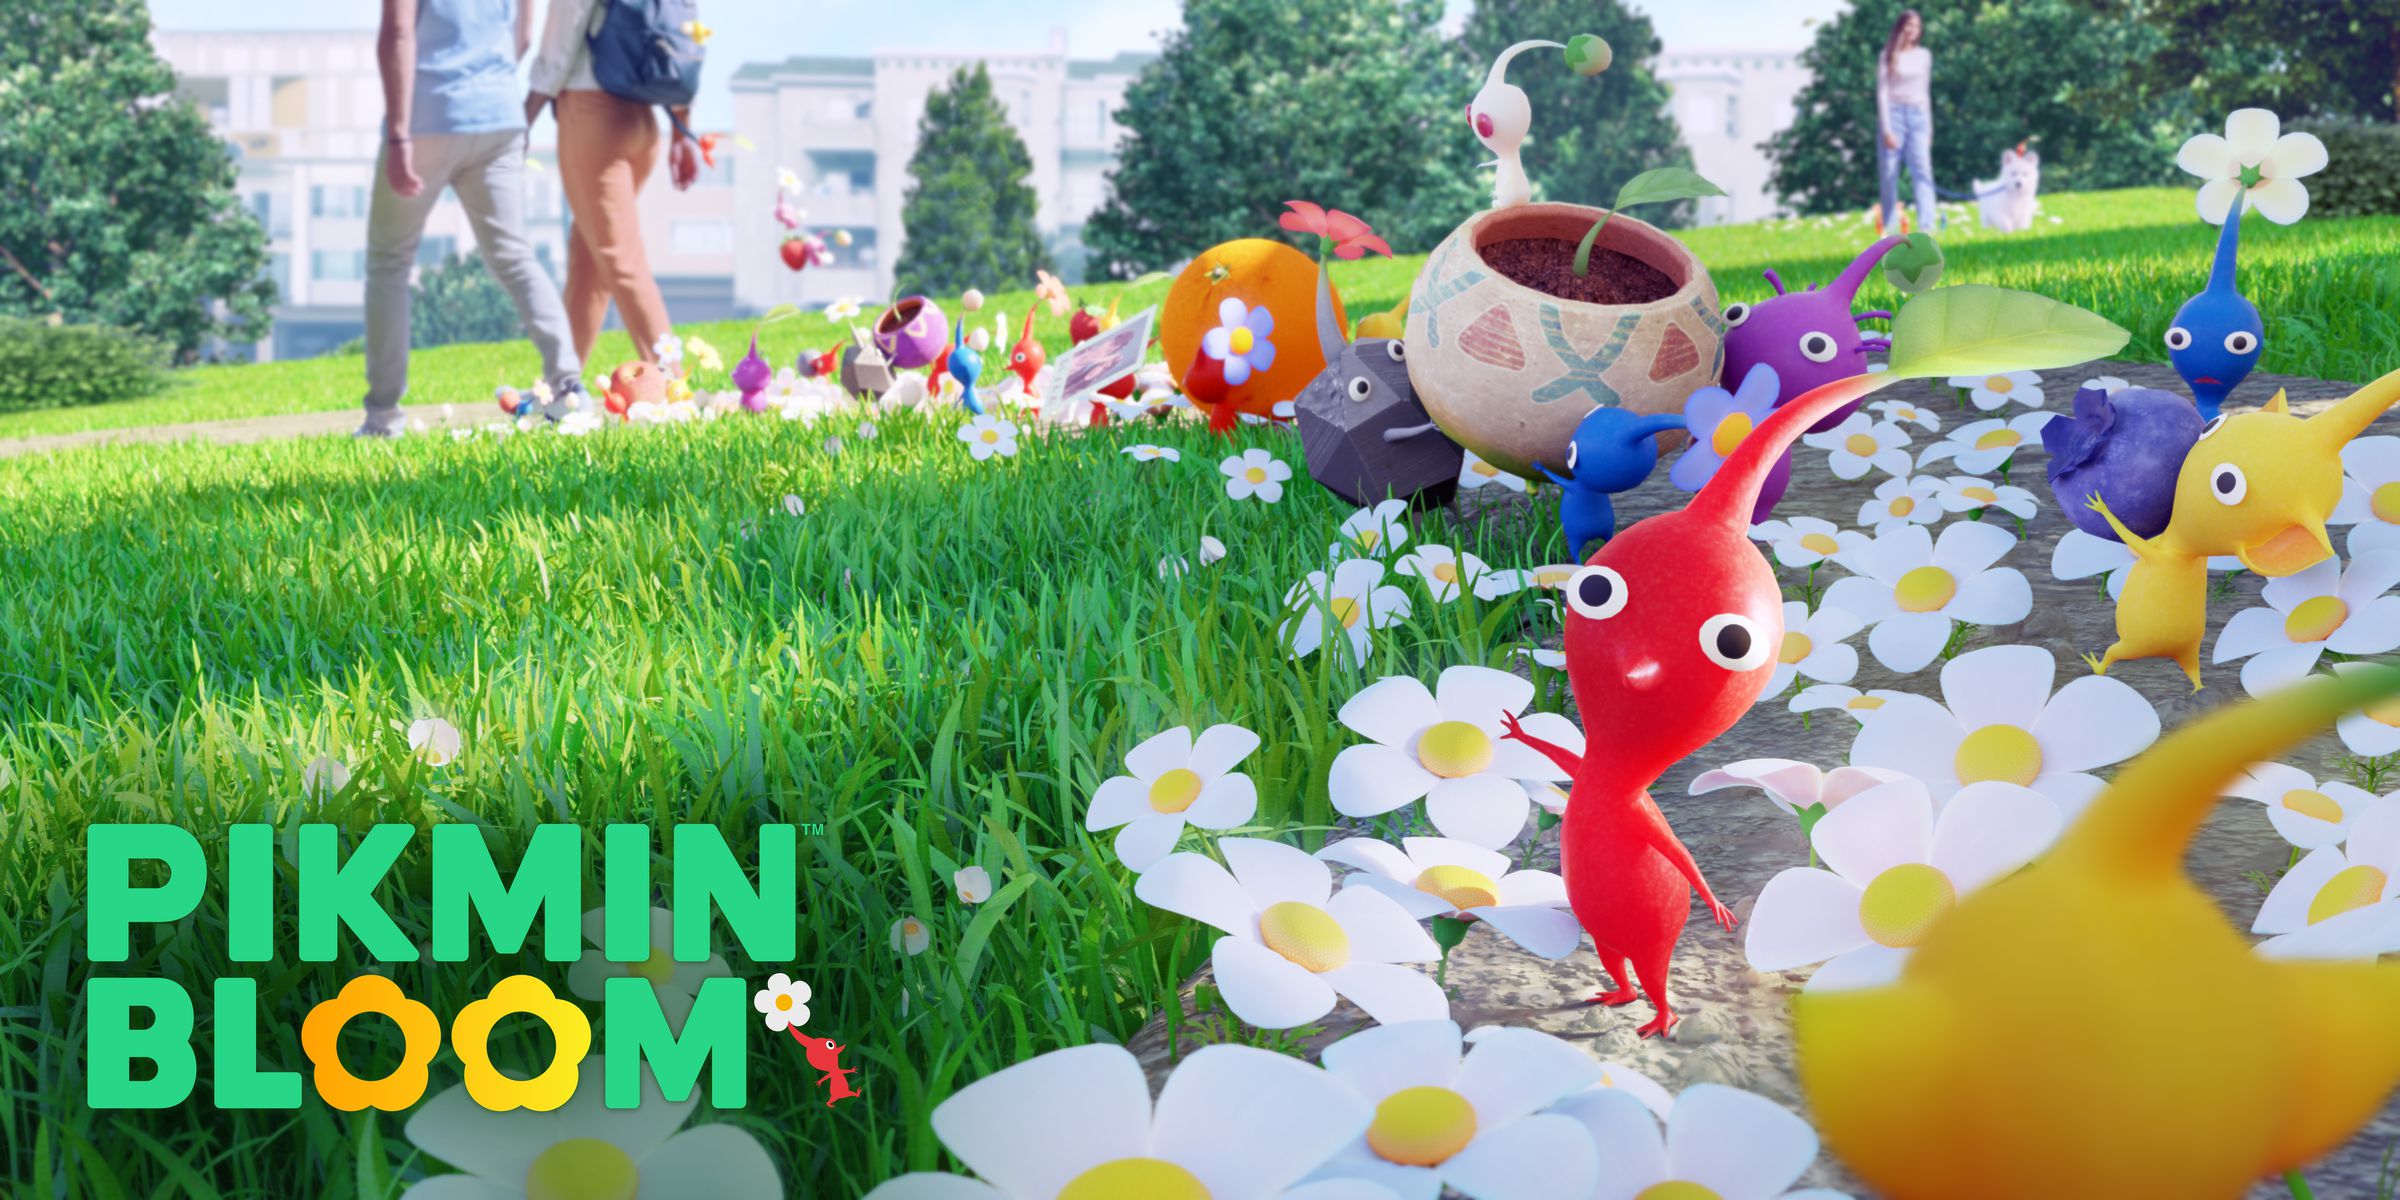 لقطة شاشة لـ Pikmin Bloom: مخلوقات صغيرة ملونة برؤوس كبيرة وسط حديقة مليئة بالأقحوان.